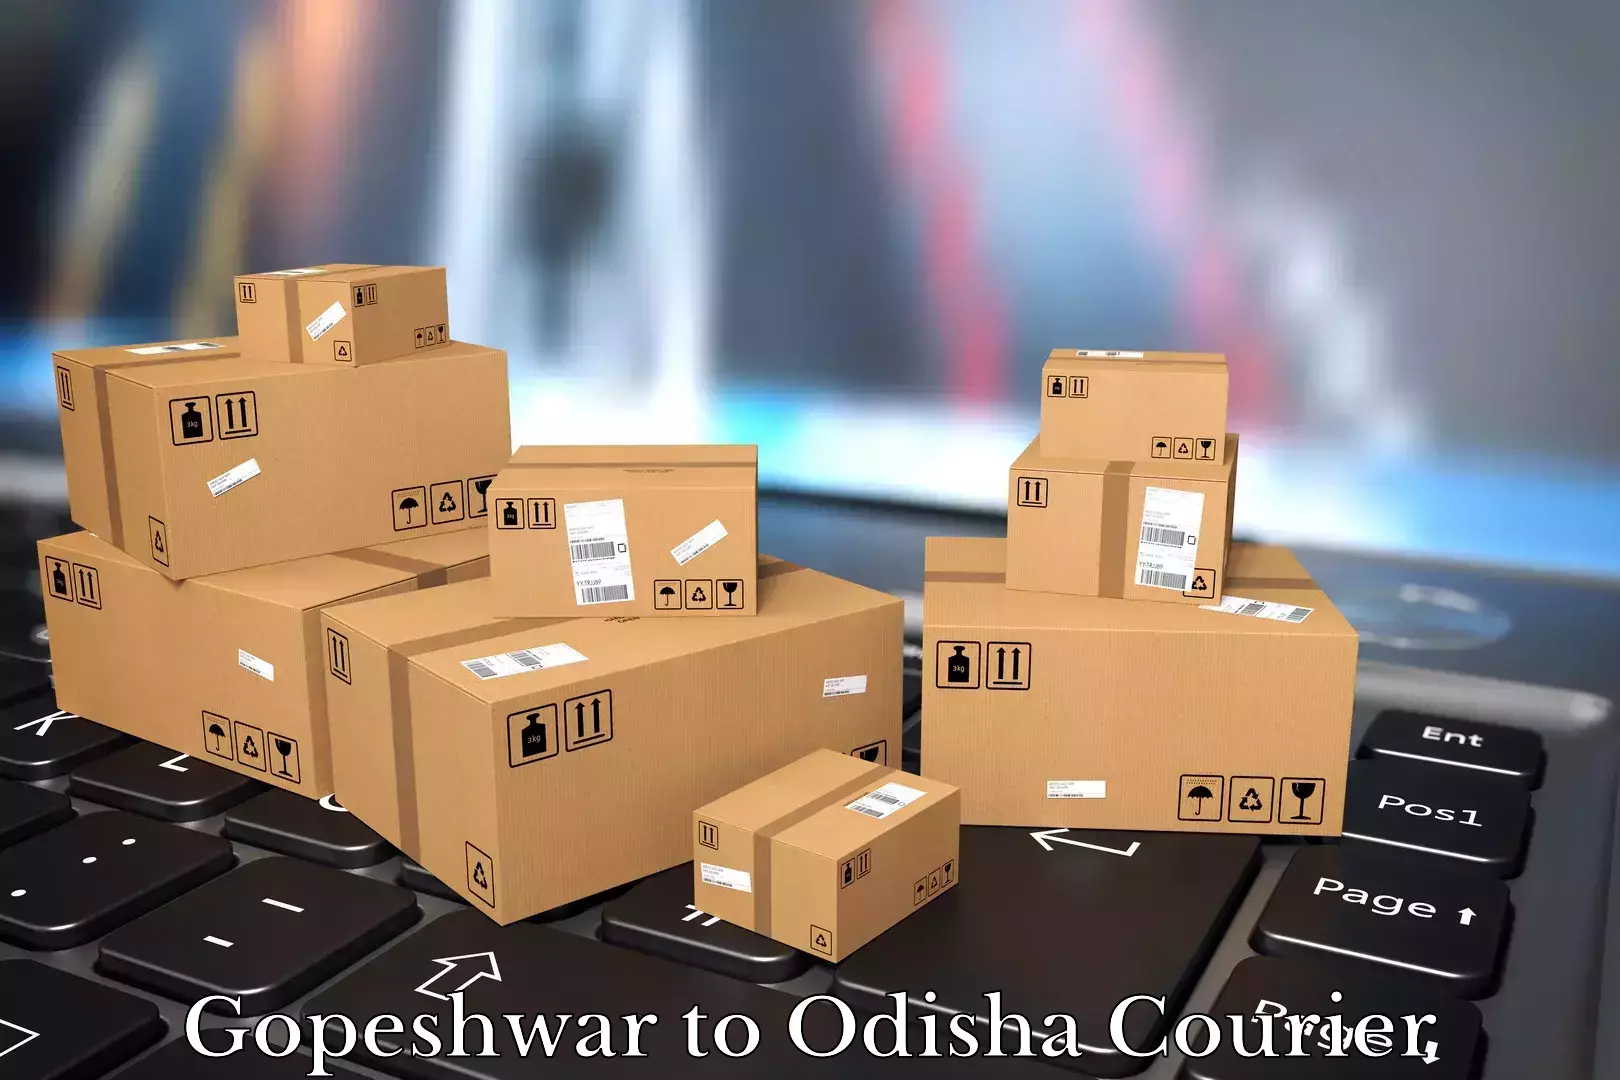 Home shifting experts Gopeshwar to Odisha